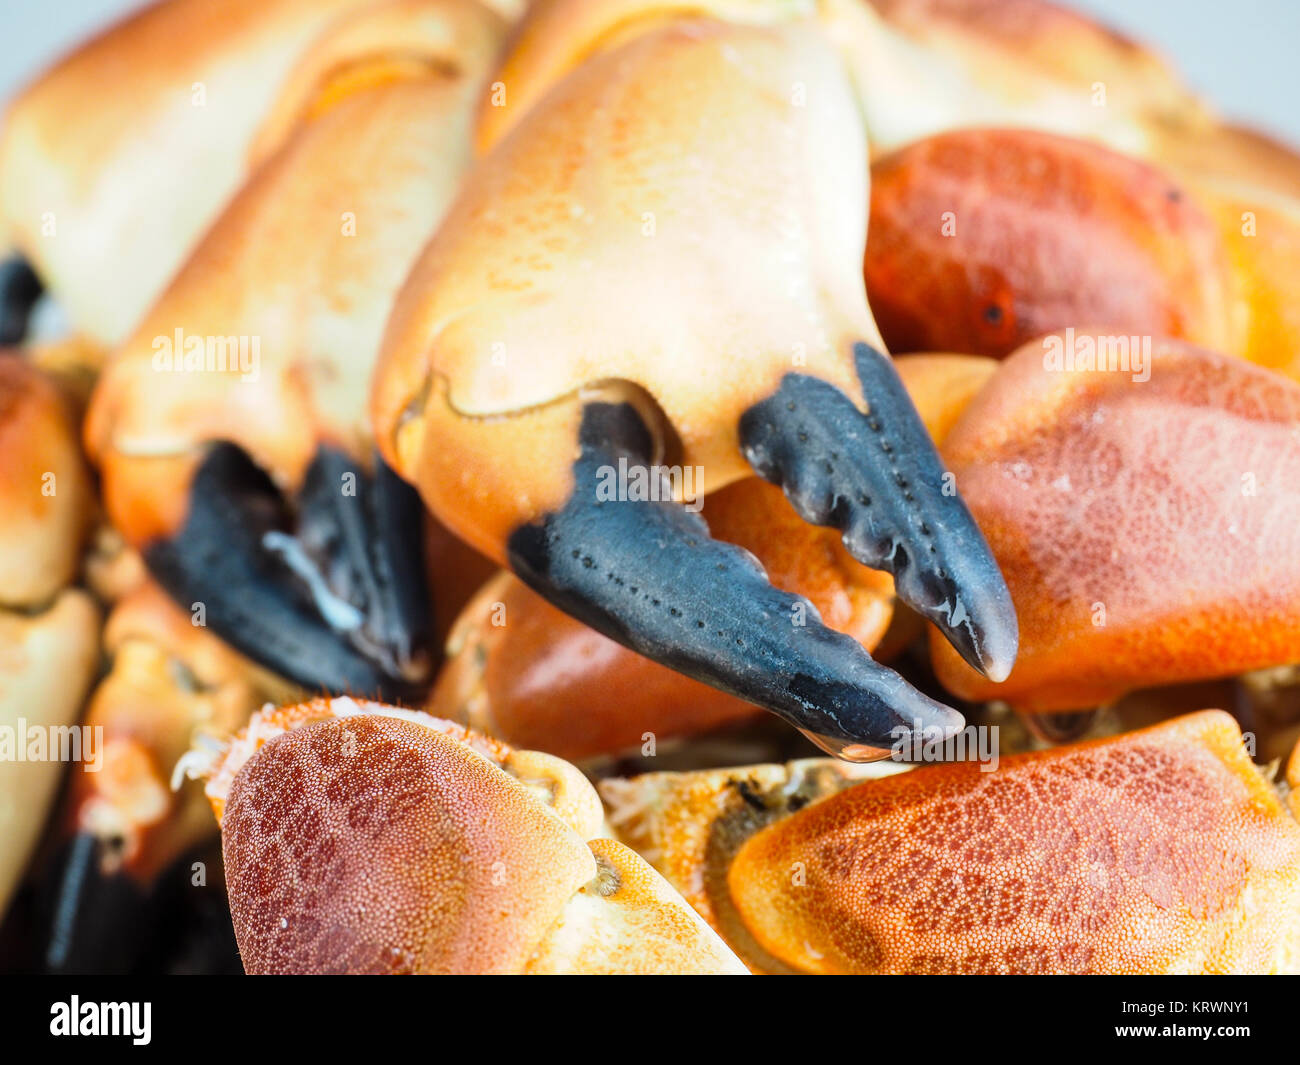 Stapel von Orange gekocht mit schwarzer Spitze, Krabben, in Nahaufnahme Stockfoto